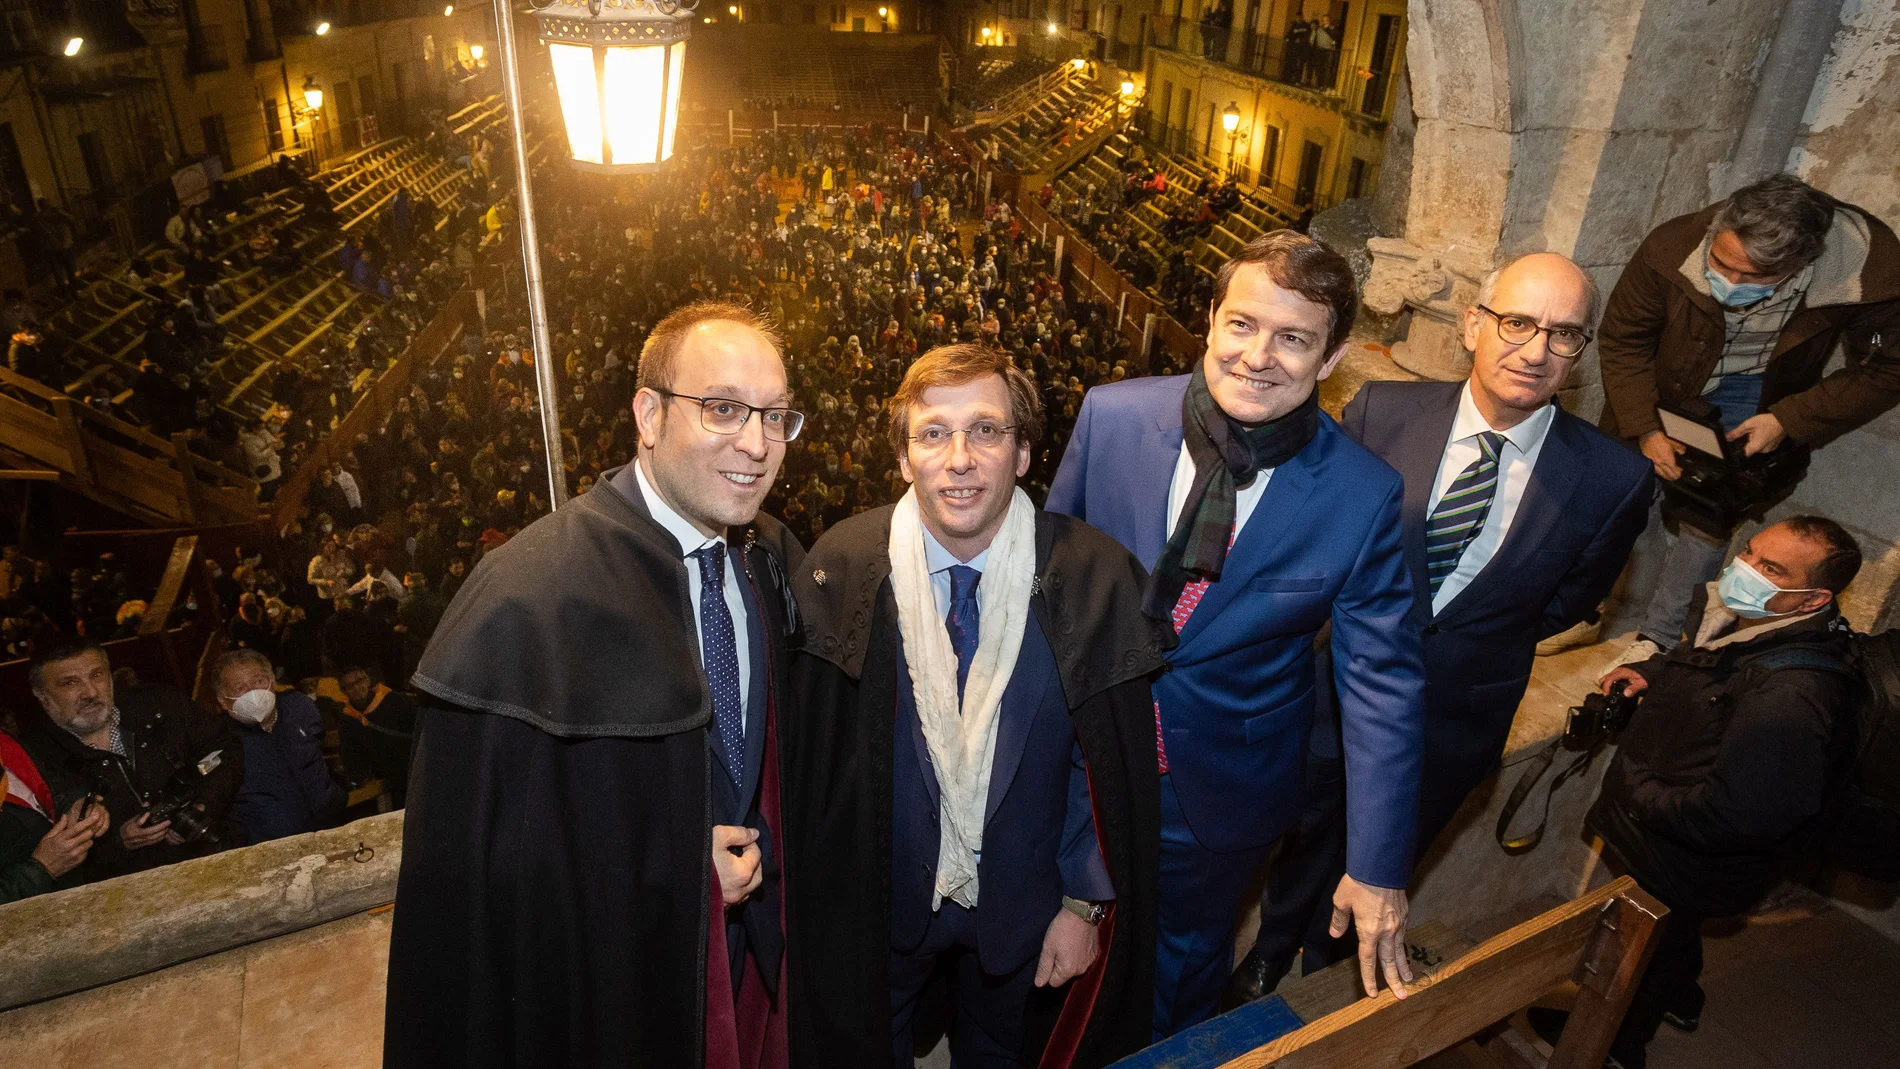 Marcos Iglesias, Almeida, Mañueco y Javier Iglesias tras el pregón del alcalde de Madrid en Ciudad Rodrigo